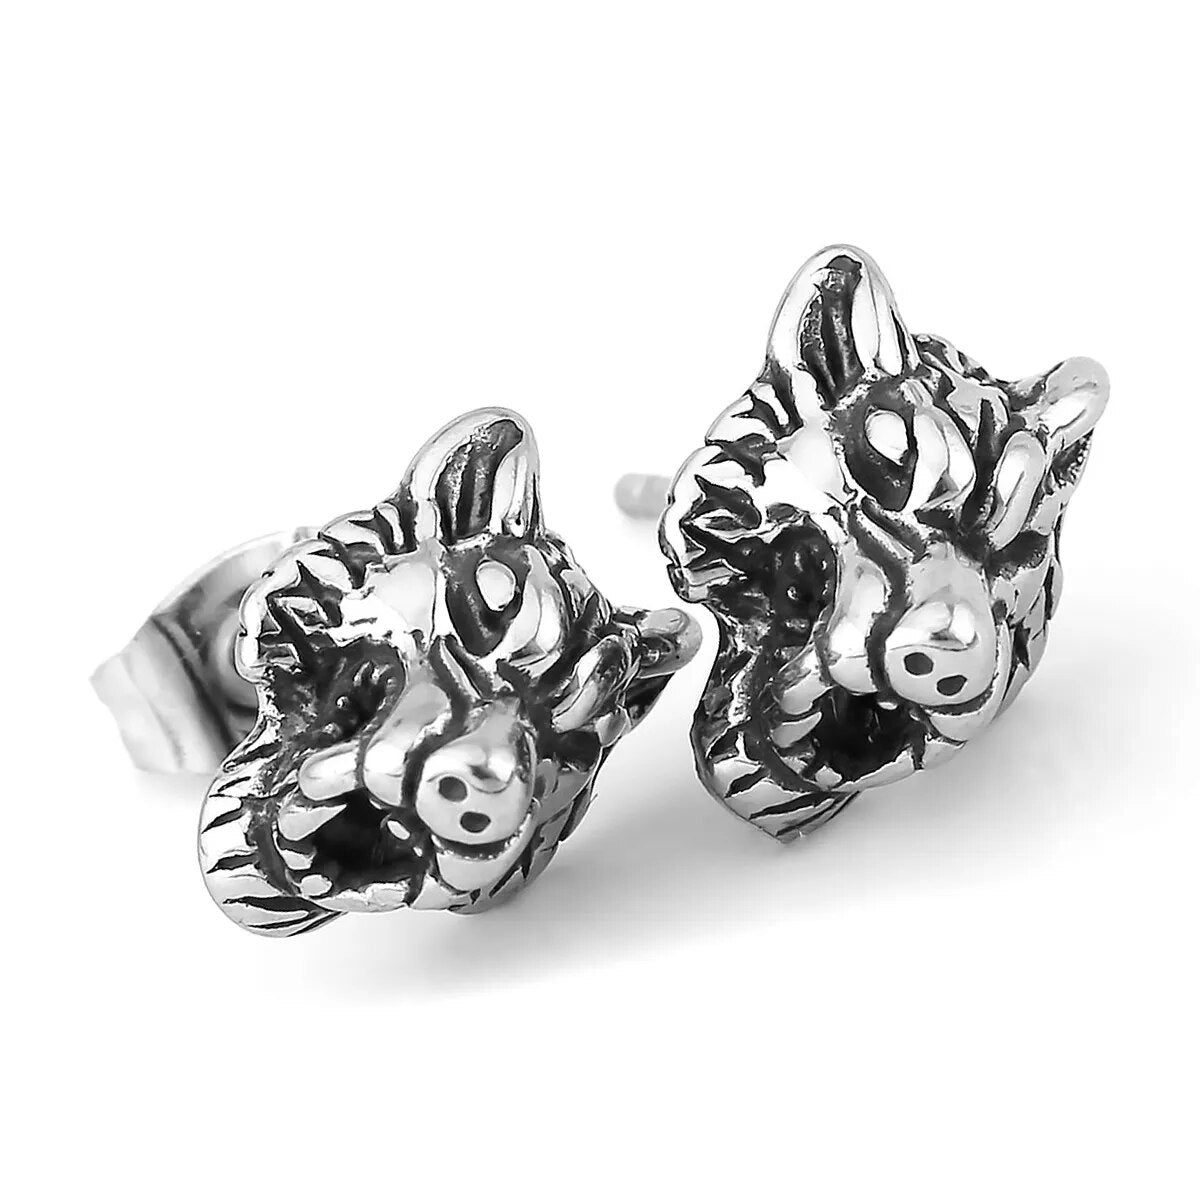 Tiger Stud Earrings - TripleViking